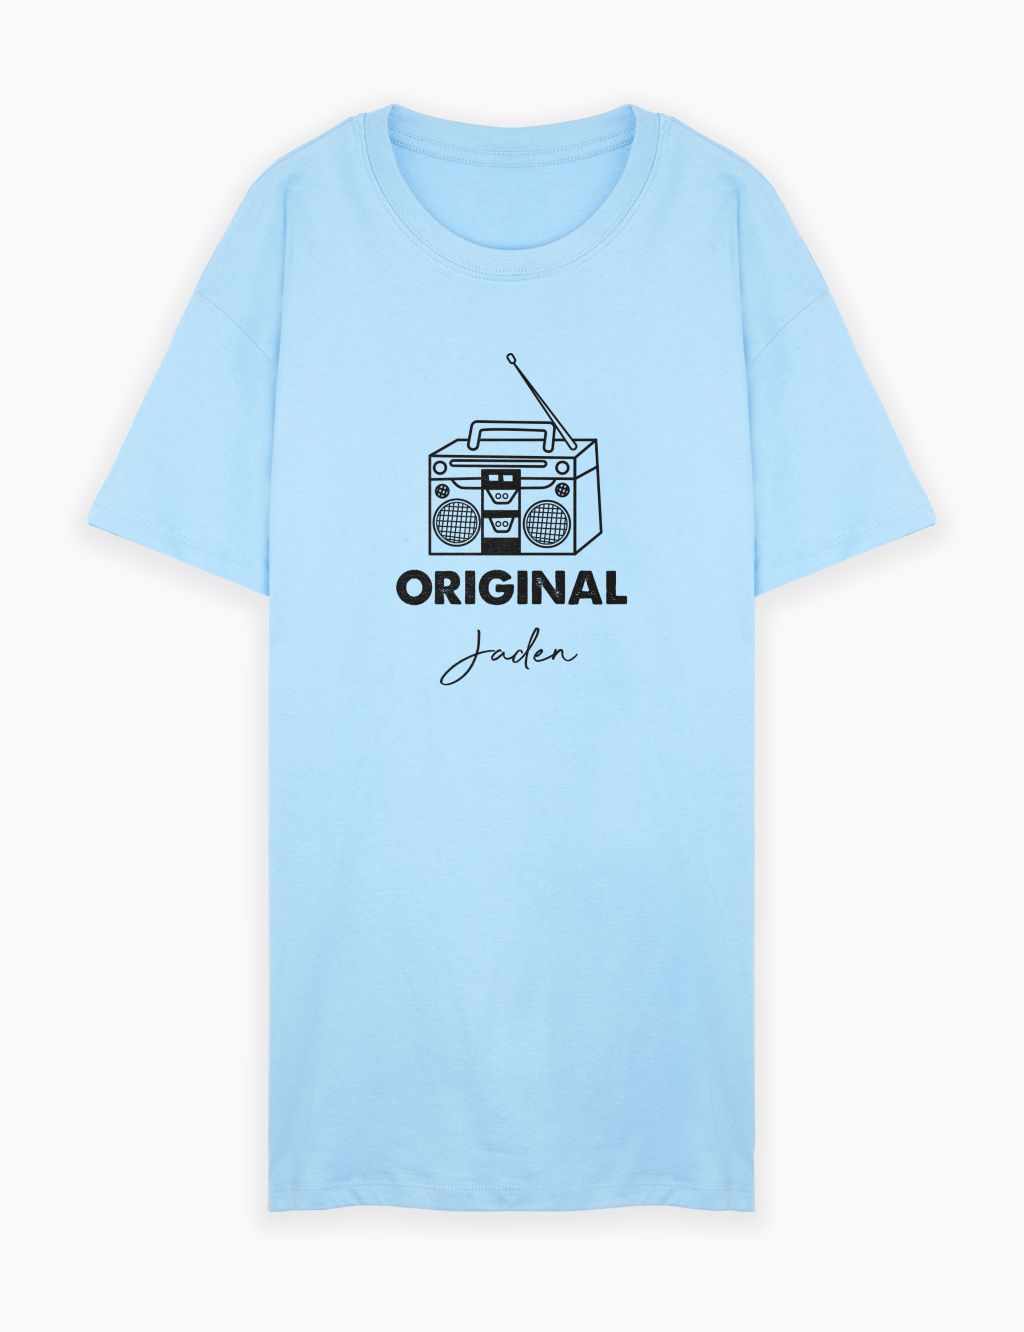 Personalised Original T-Shirt for Men image 1